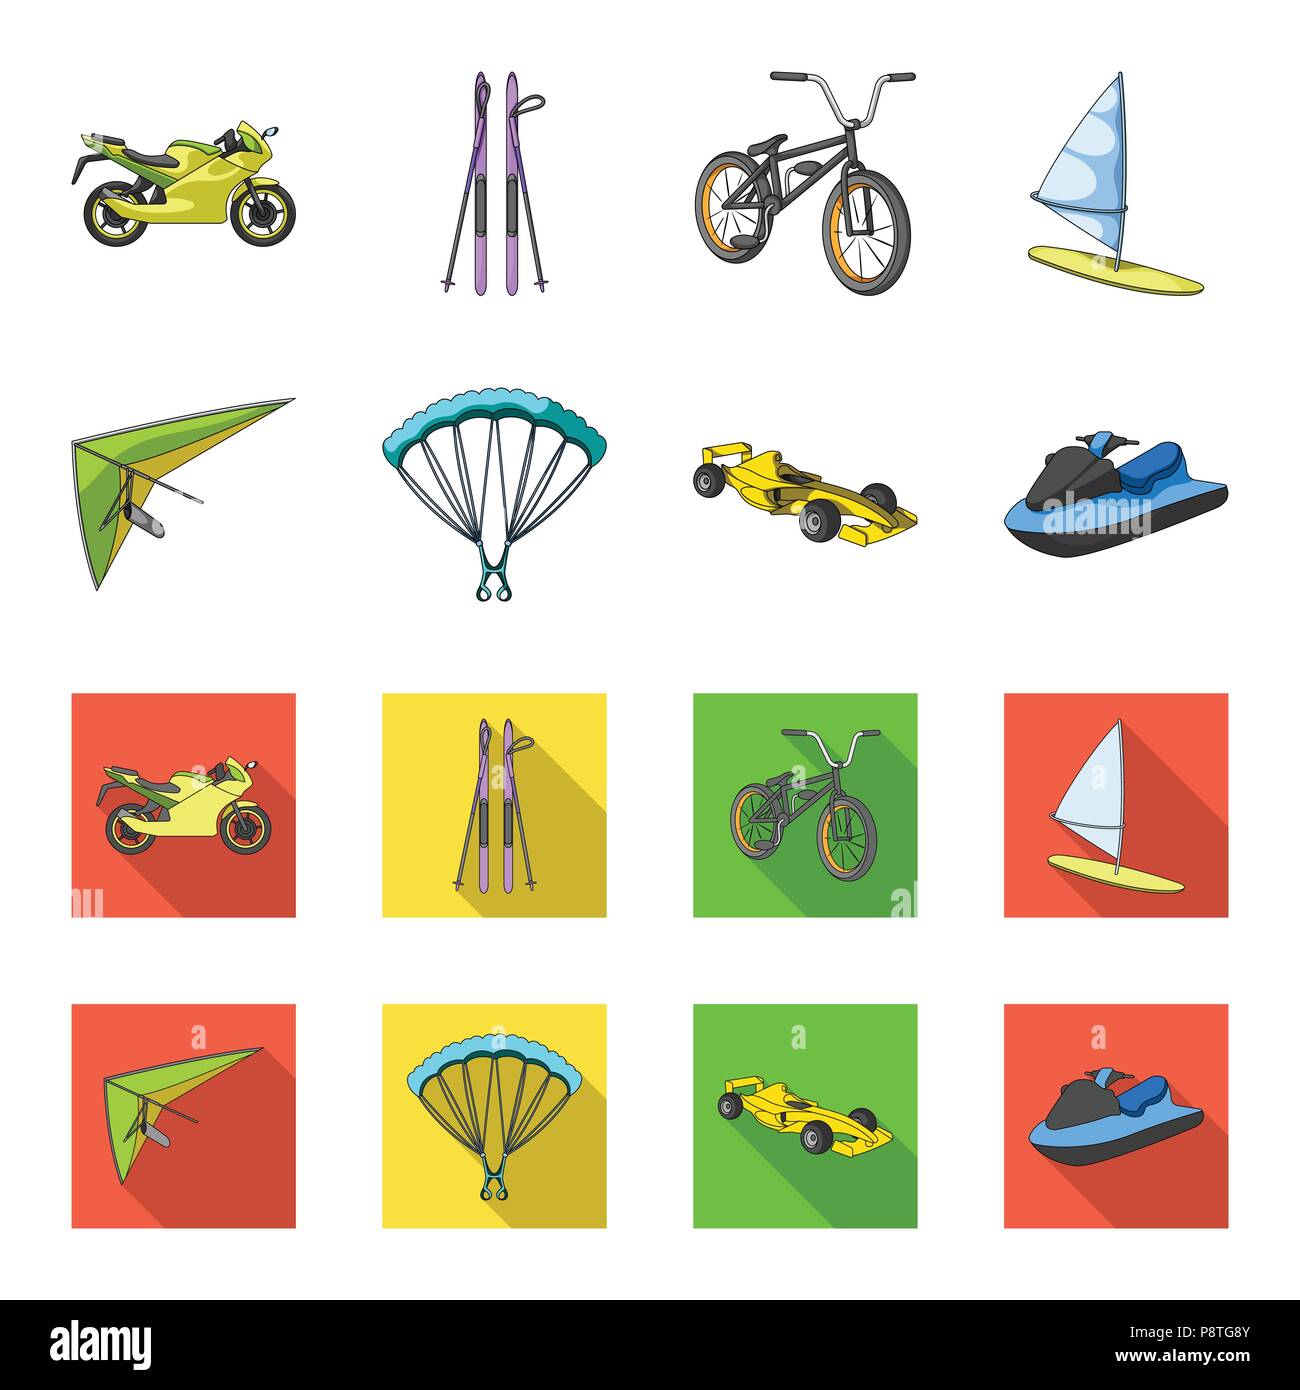 Hängegleiter, Fallschirm, Rennwagen, Wasser-scooter. Extreme Sport Sammlung Icons im Cartoon, flacher Stil vektor Symbol lieferbar Abbildung. Stock Vektor